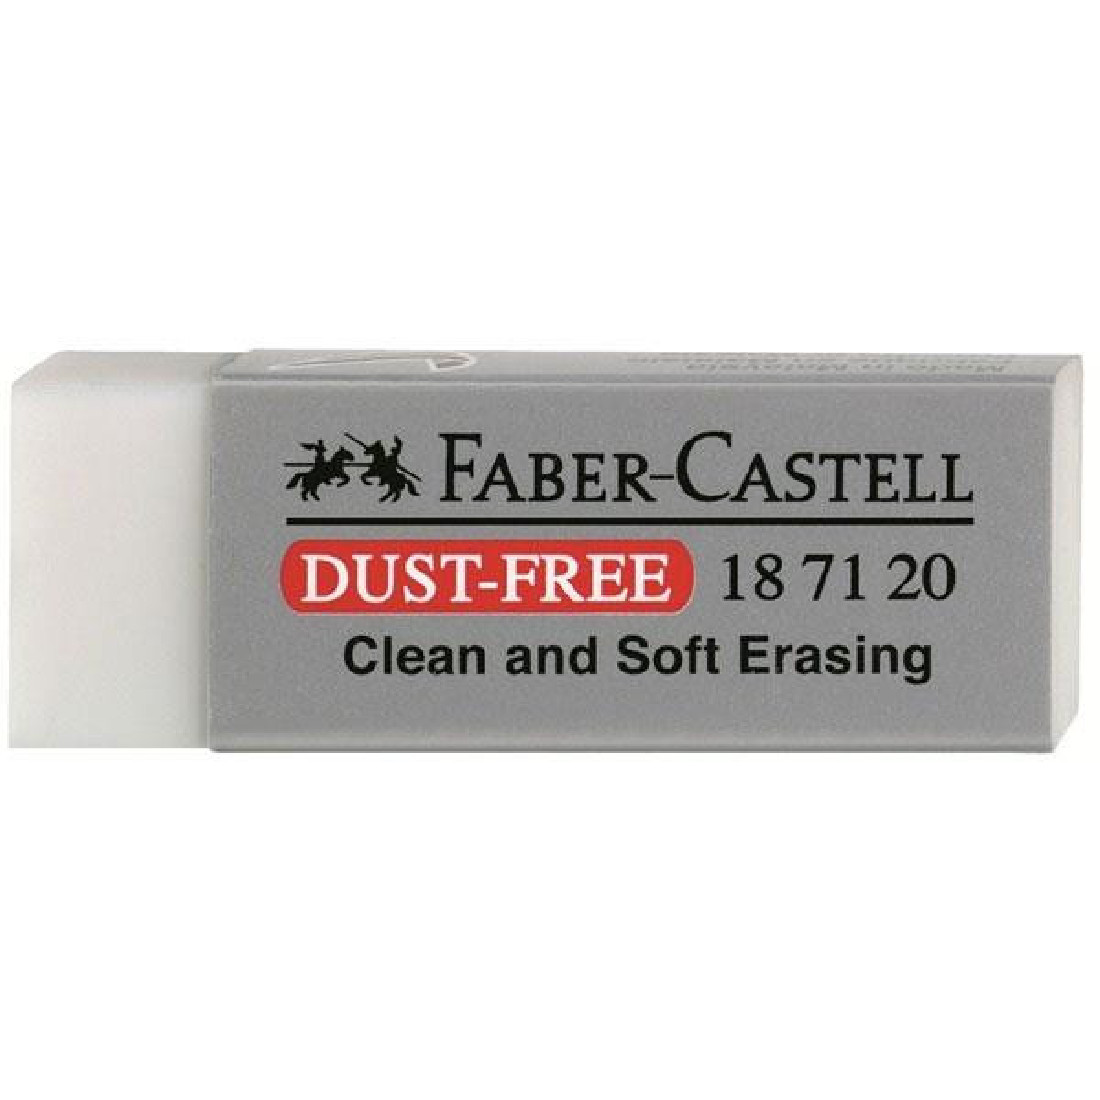 Γόμα Dust Free Ν187120 Faber Castell